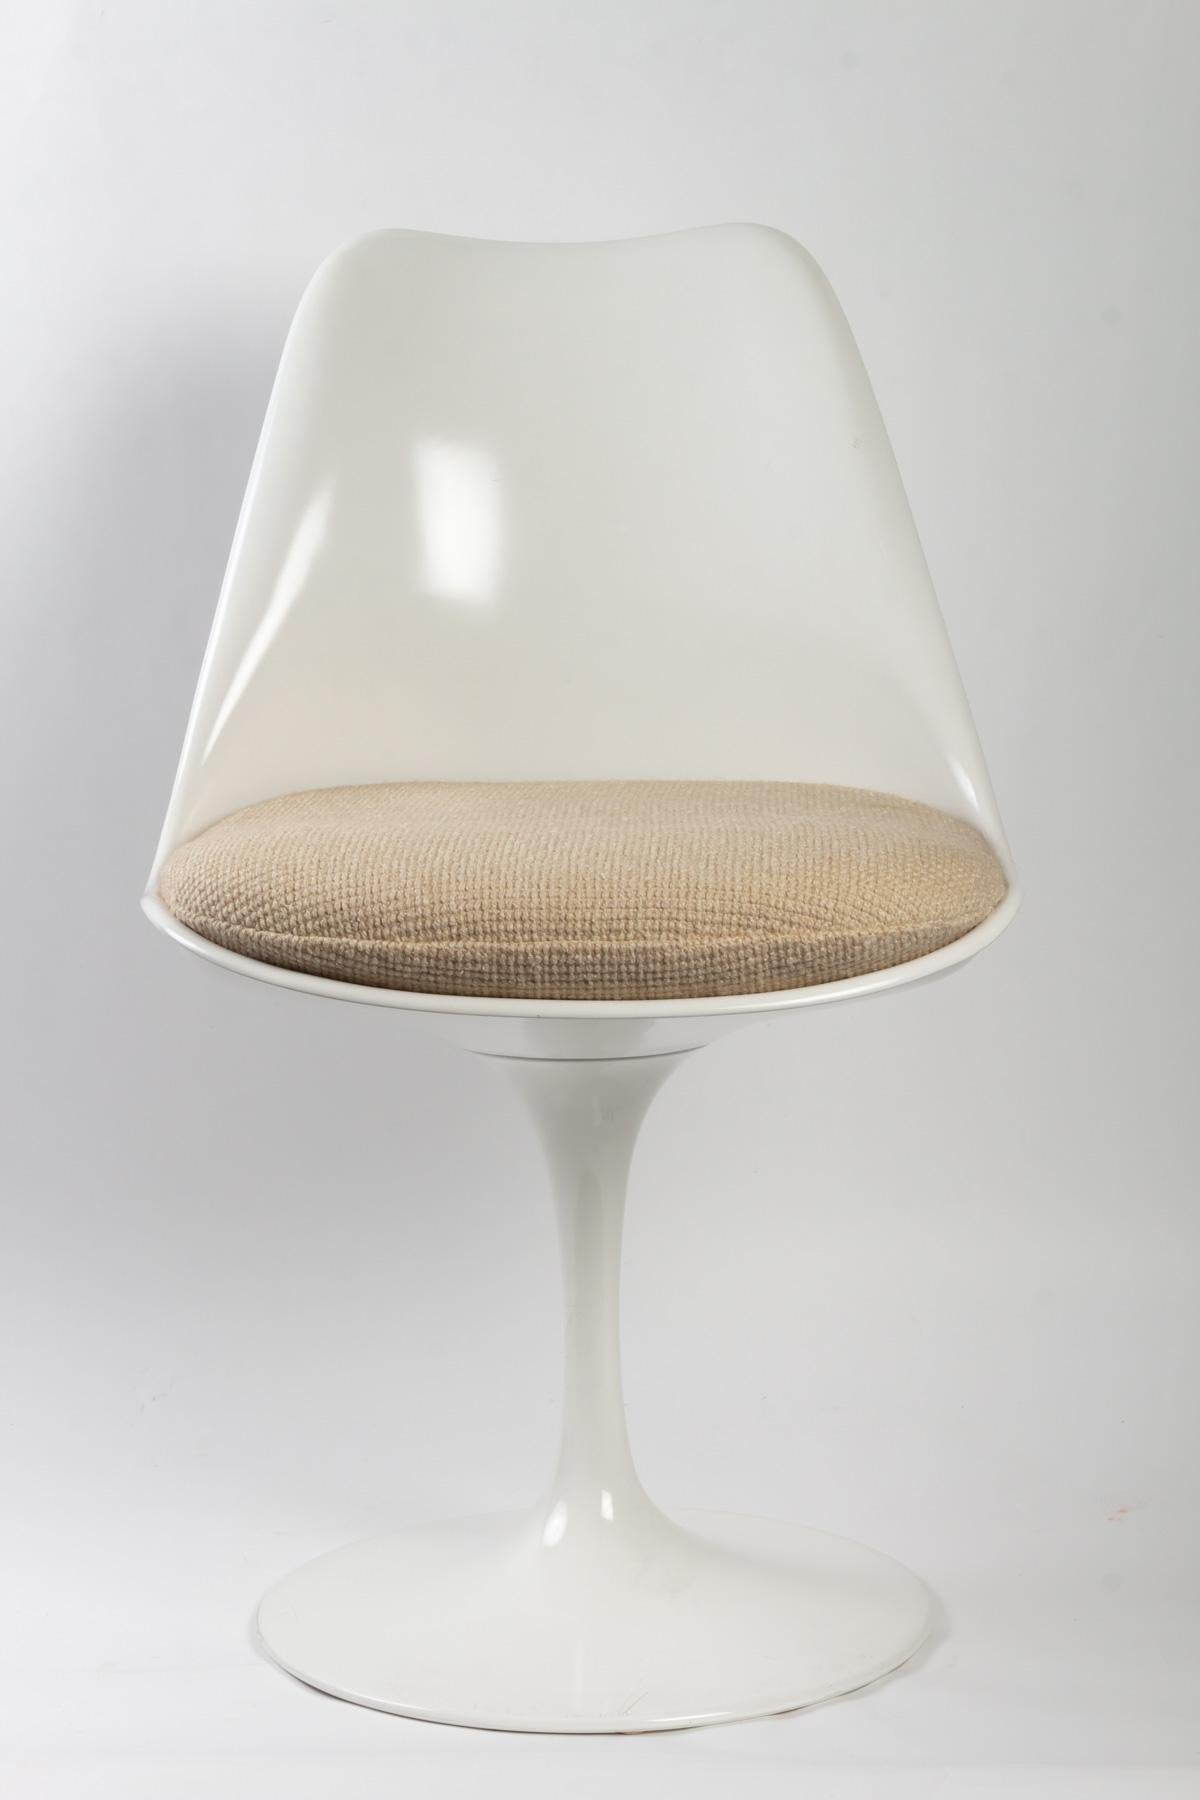 Eero Saarinen (1910-1961) & Knoll International
Suite de 4 chaises modèle Tulipe
Coque en fibre de verre laquée blanc, piètement pivotant en fonte d'aluminium recouvert de Rilsan blanc
Measures: 81 x 51 x 44 cm. The tulip chair was designed by